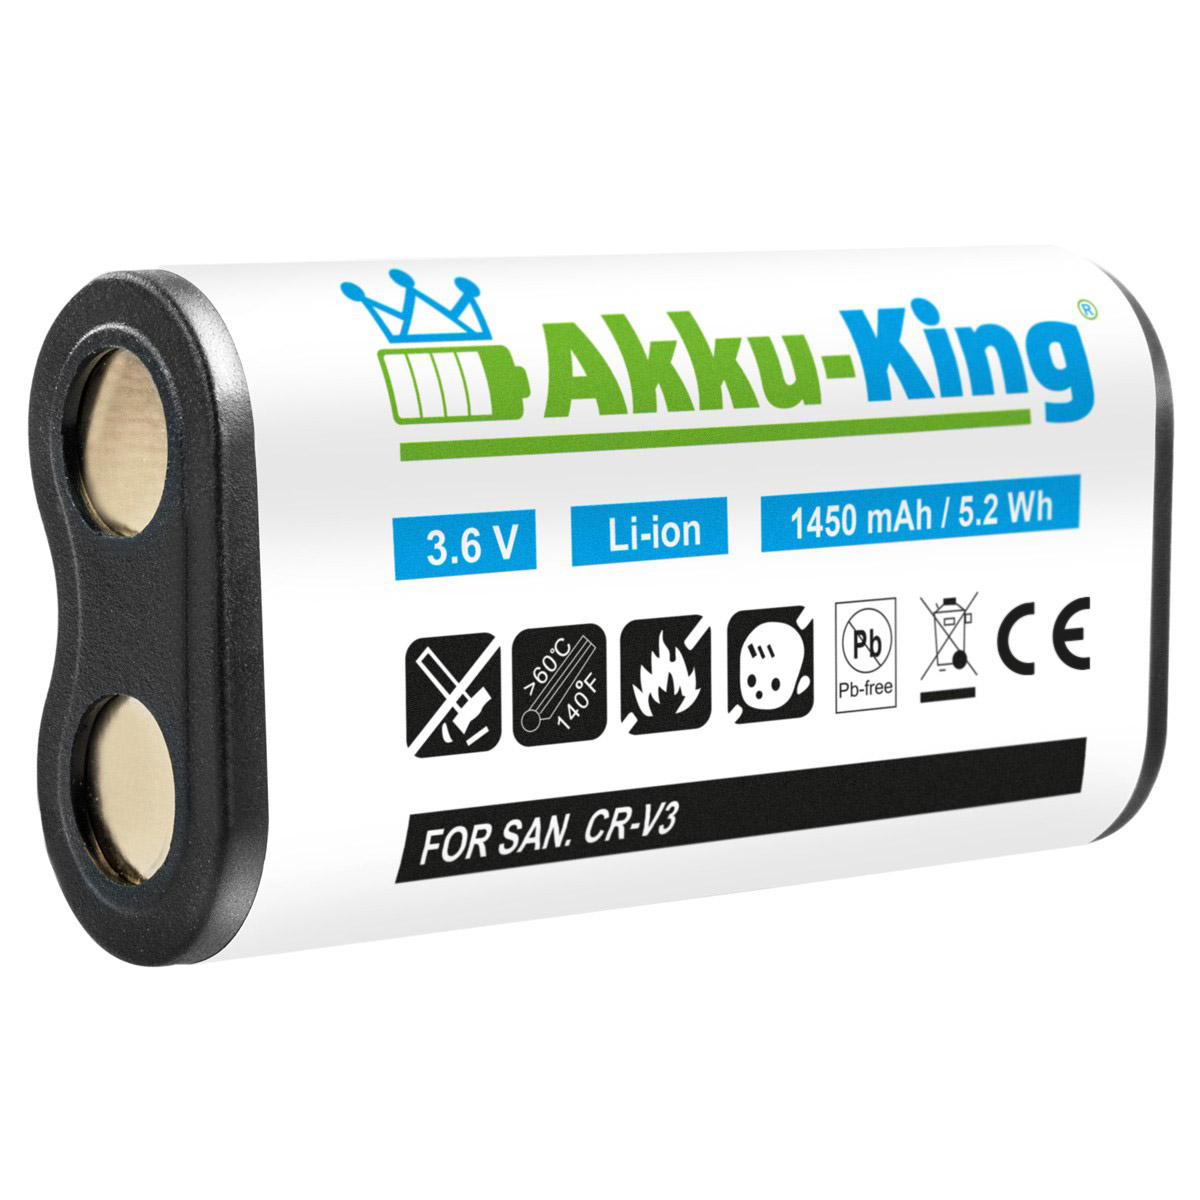 Volt, mit AKKU-KING Kamera-Akku, kompatibel Akku 3.6 Li-Ion 1450mAh CR-V3 Nikon